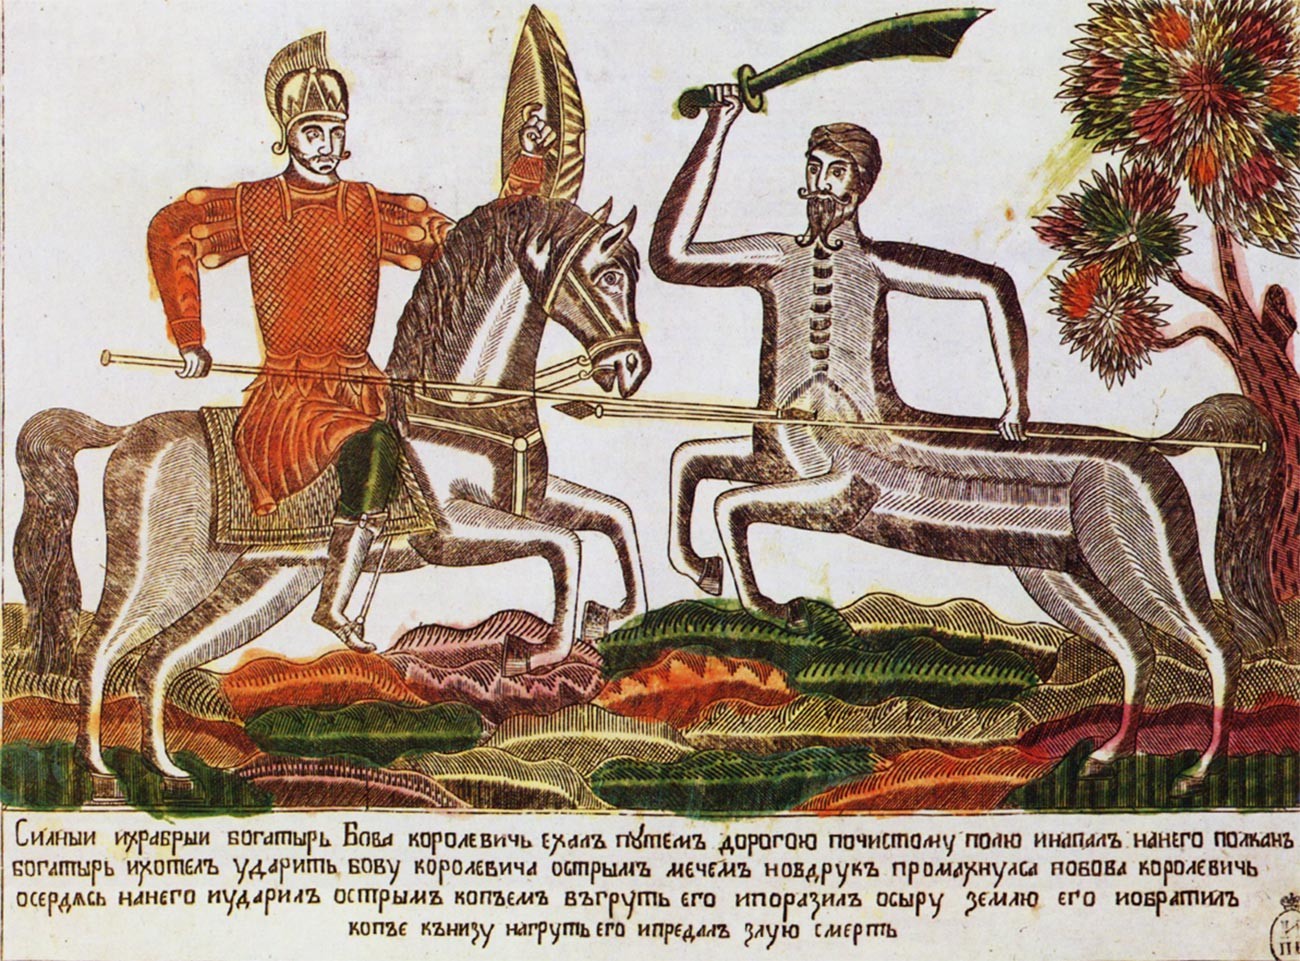 ルボーク「ボーヴァ・コロレヴィチとボガトゥイリのポルカン」、19世紀